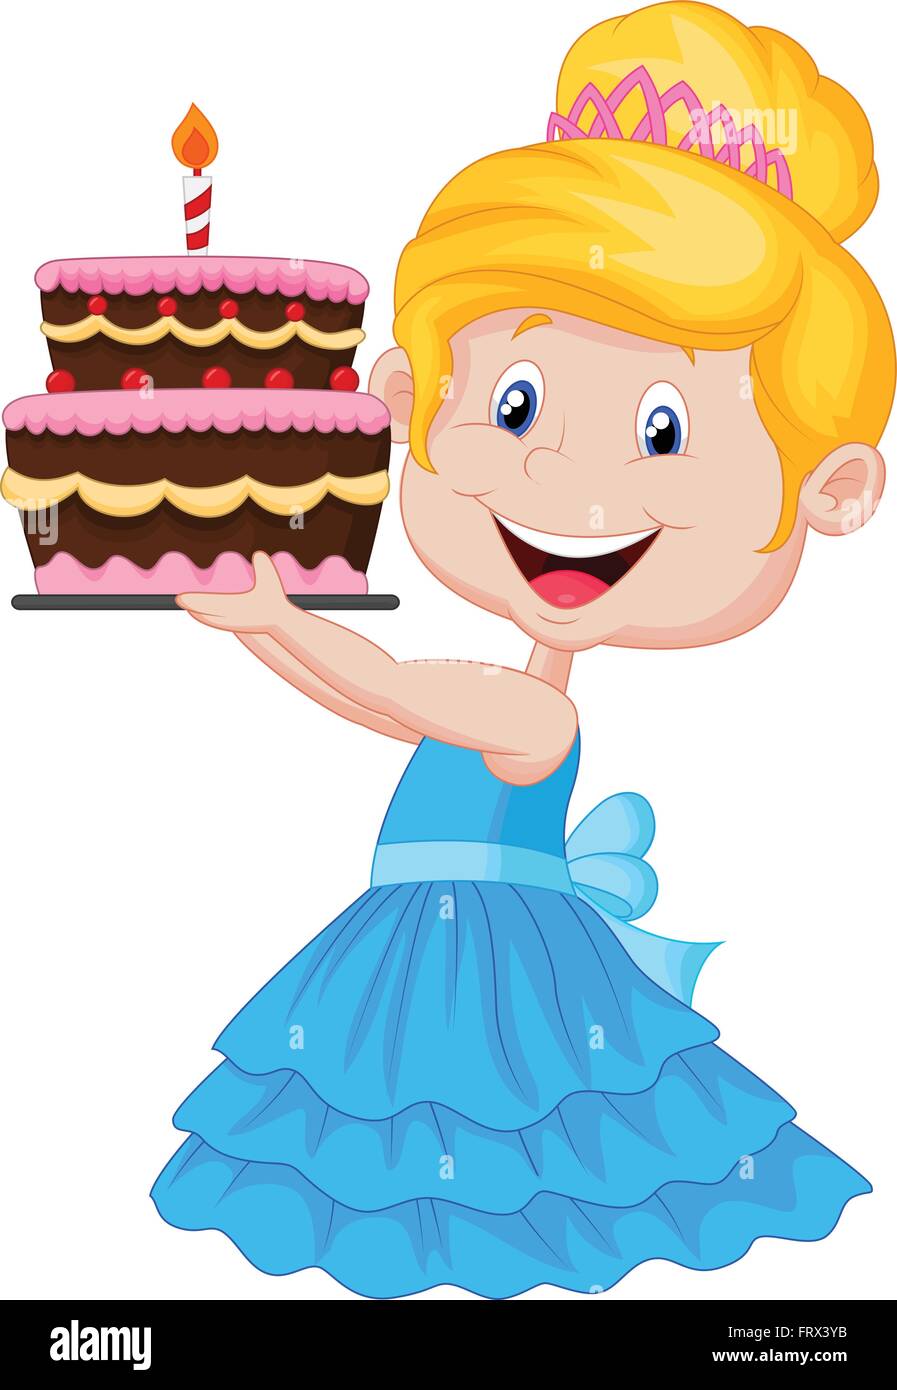 buon compleanno biglietto di auguri ragazza con torta di compleanno 2424749  Arte vettoriale a Vecteezy